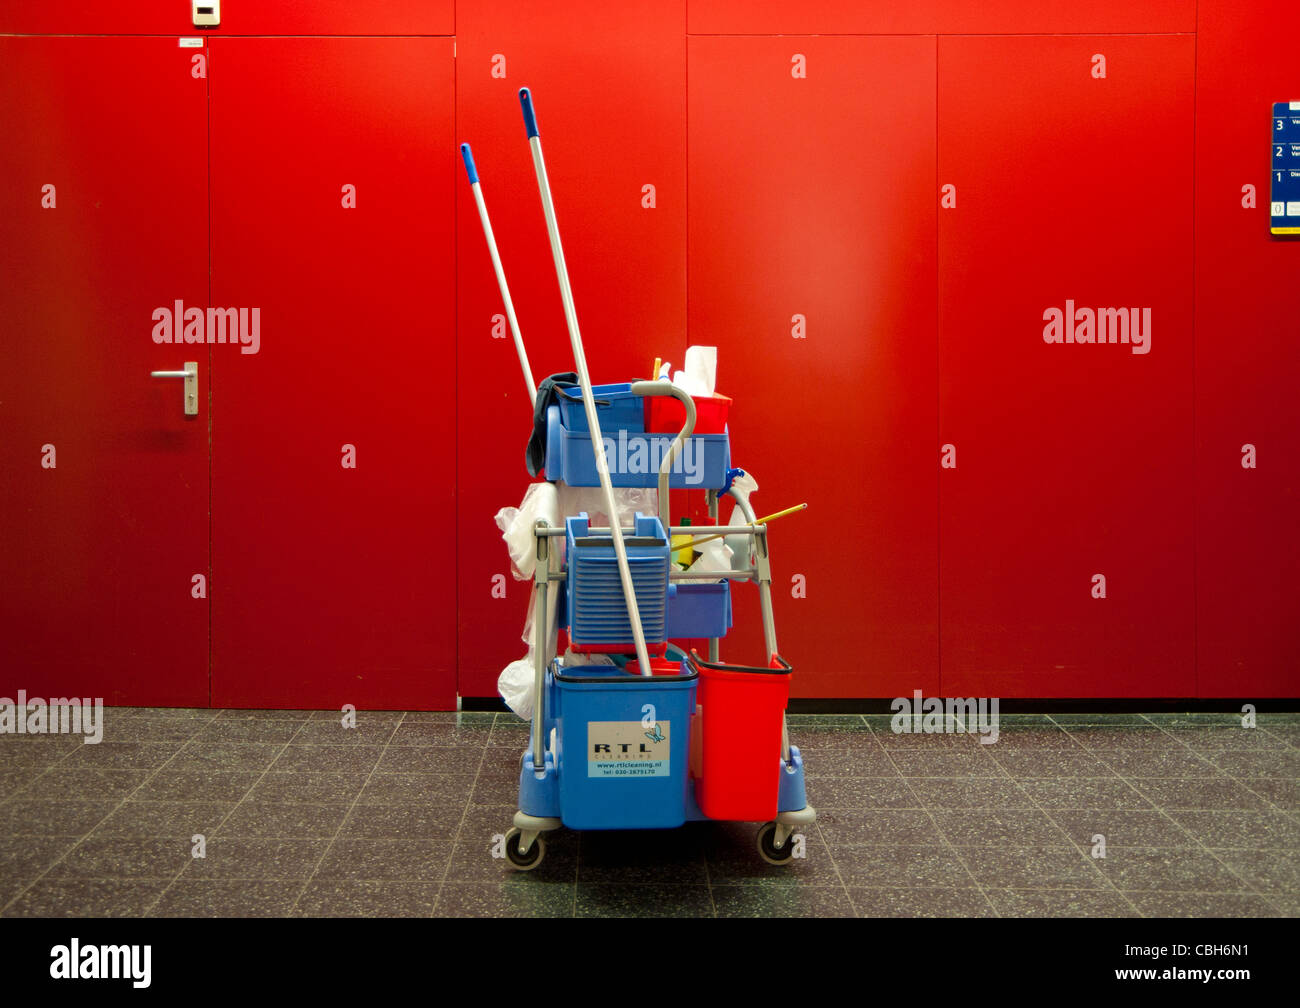 Composición con pared roja y productos de limpieza, sala, tensión, aventuras Foto de stock